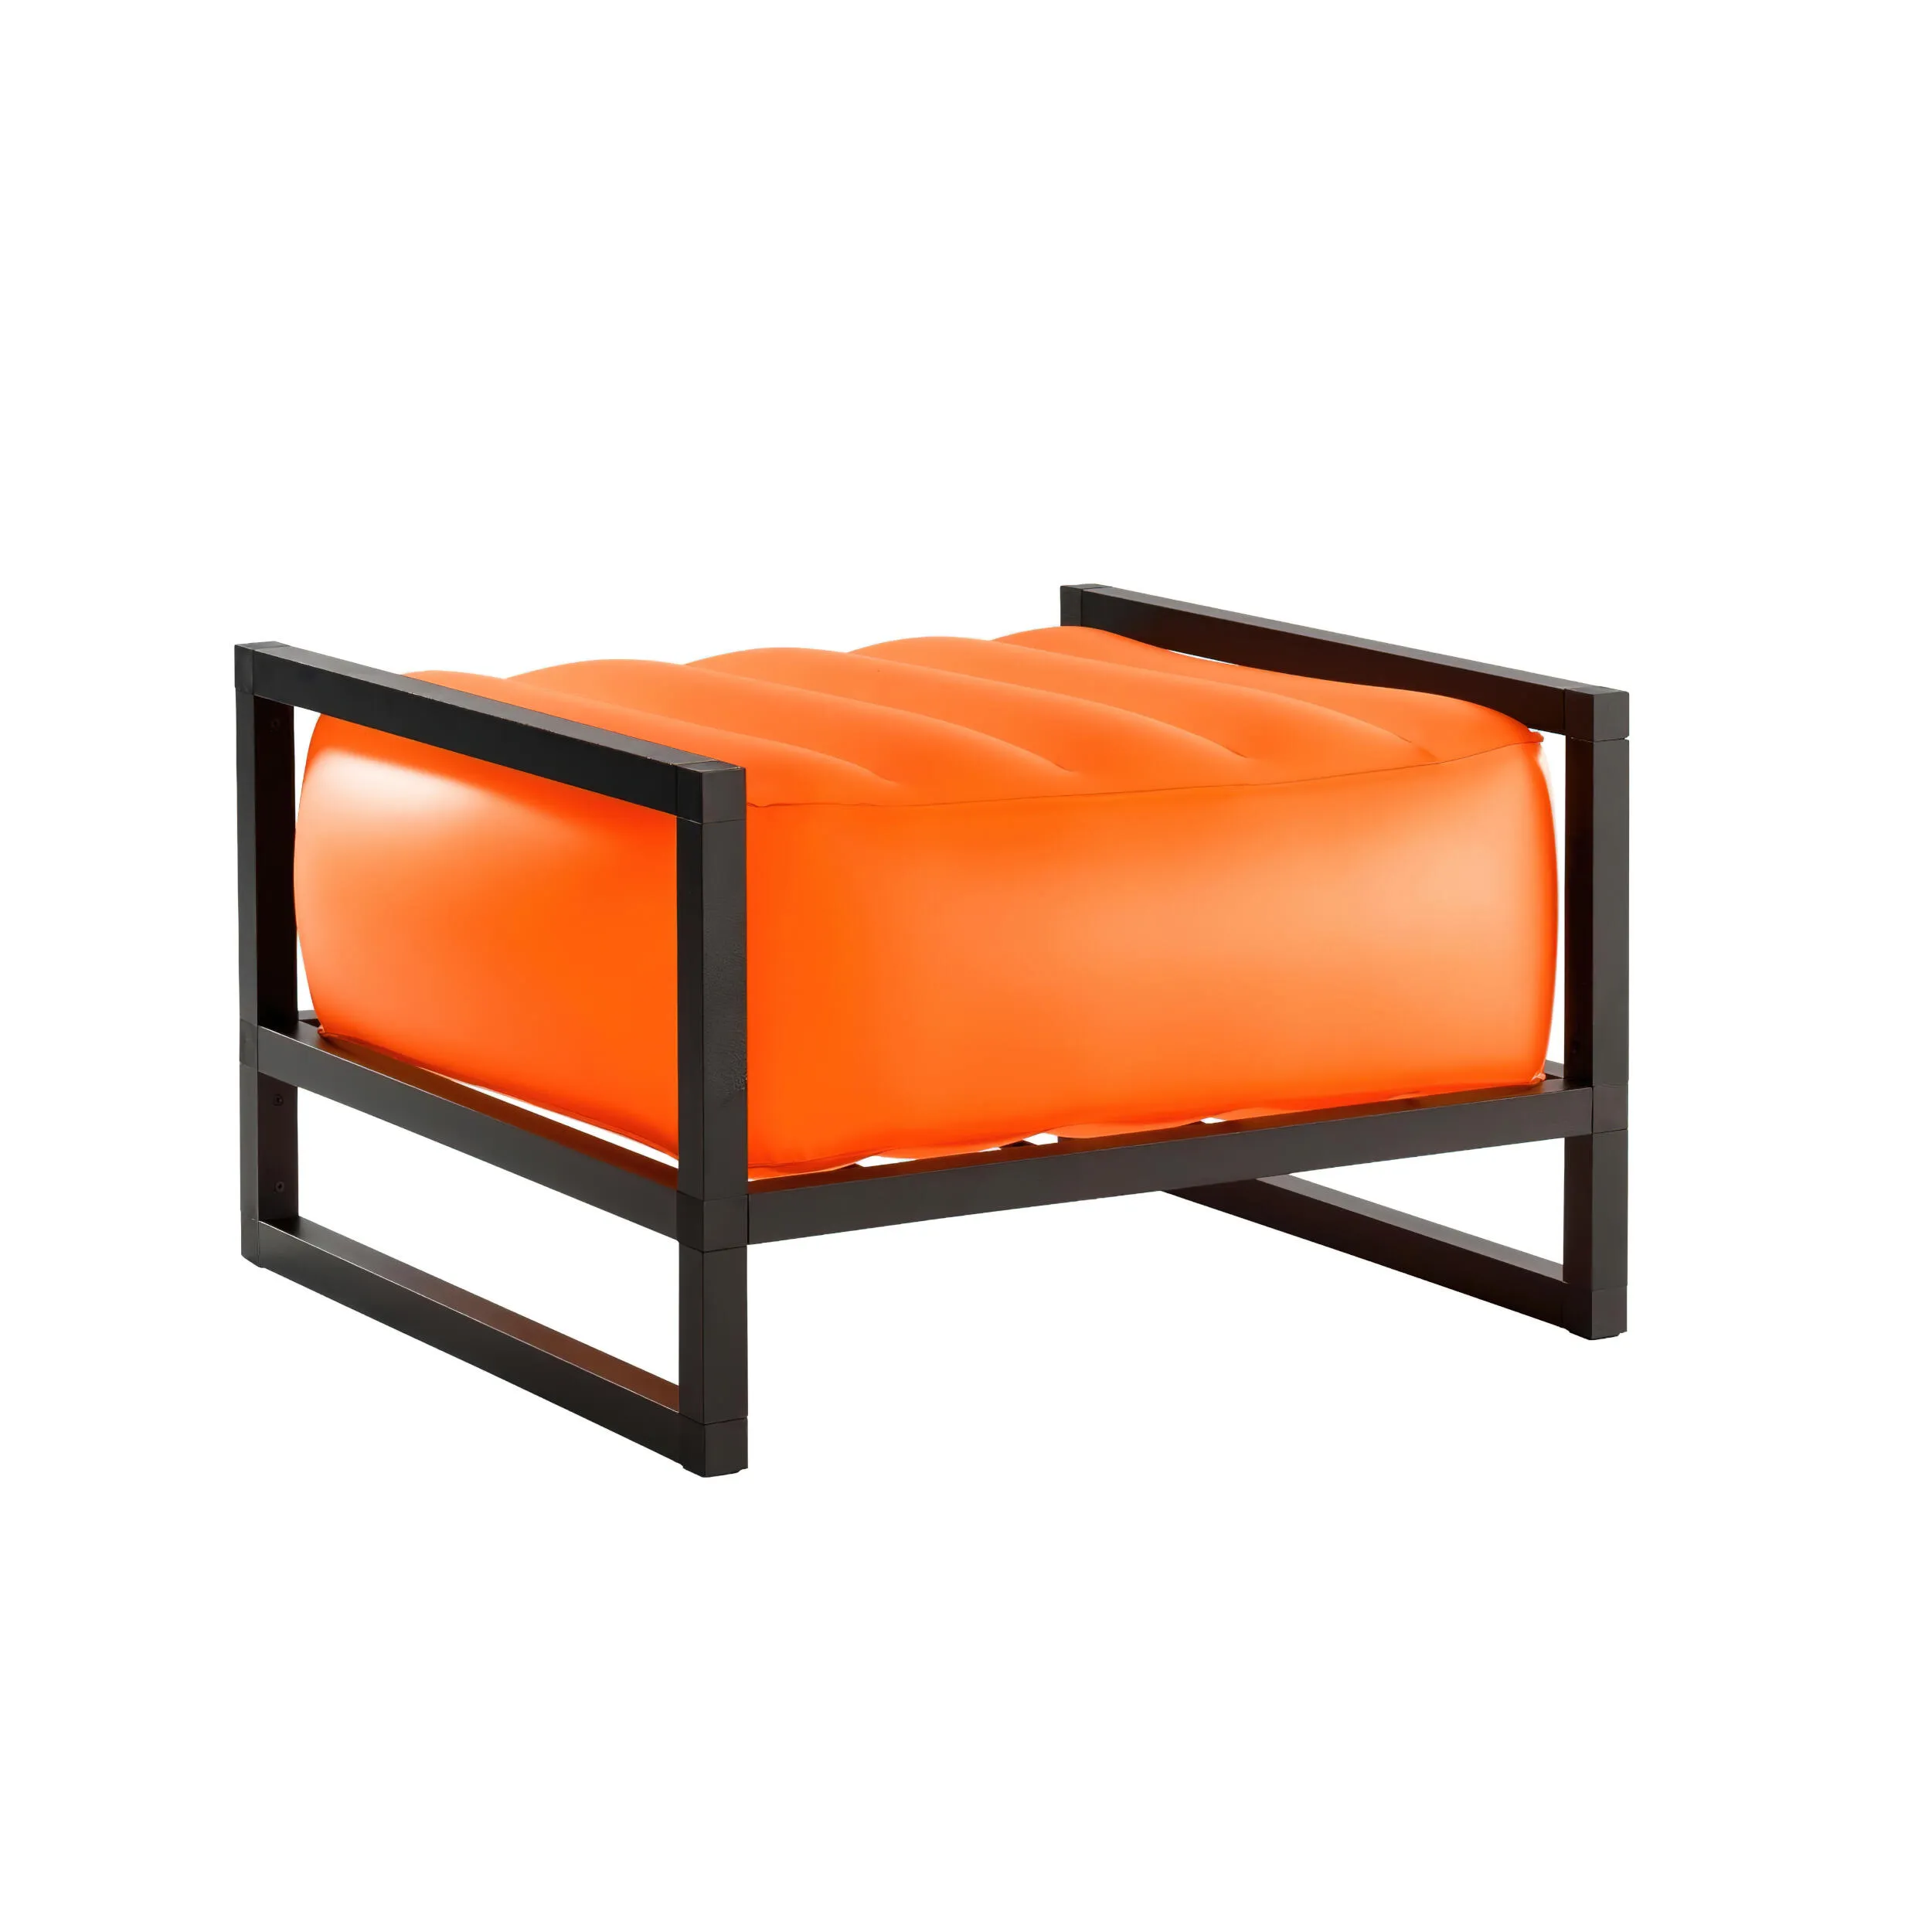 pouf Yomi eko illuminato struttura in legno nero, dimensioni 62x70xH40 cm peso 9 kg, seduta gonfiabile in TPU colore arancio traslucido